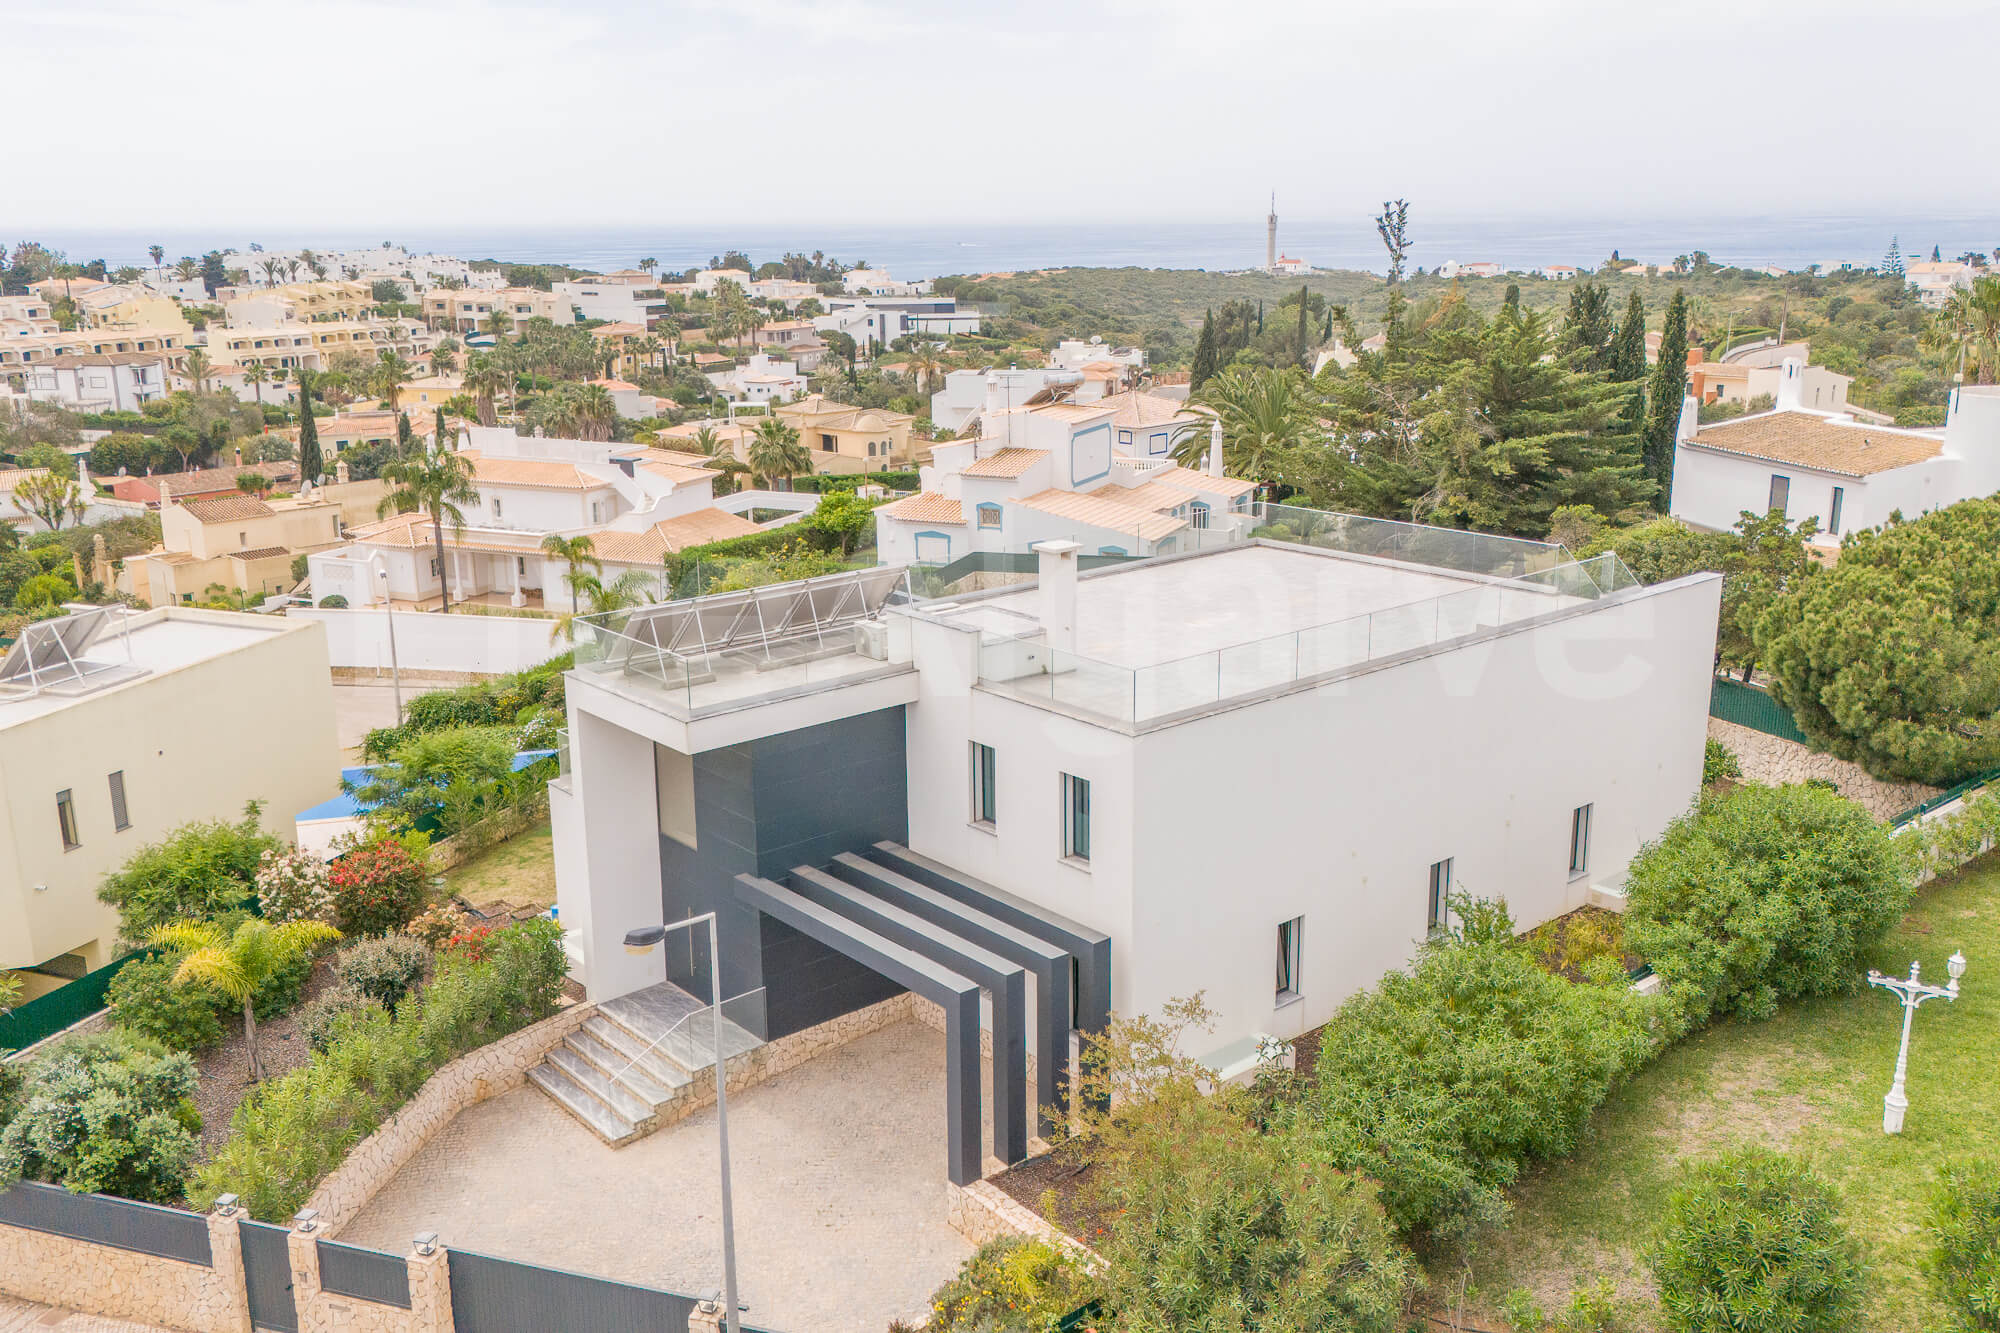 SEA VIEW | Ultra-modern Luxury T4+1 Villa at Ferragudo for sale - Lagoa